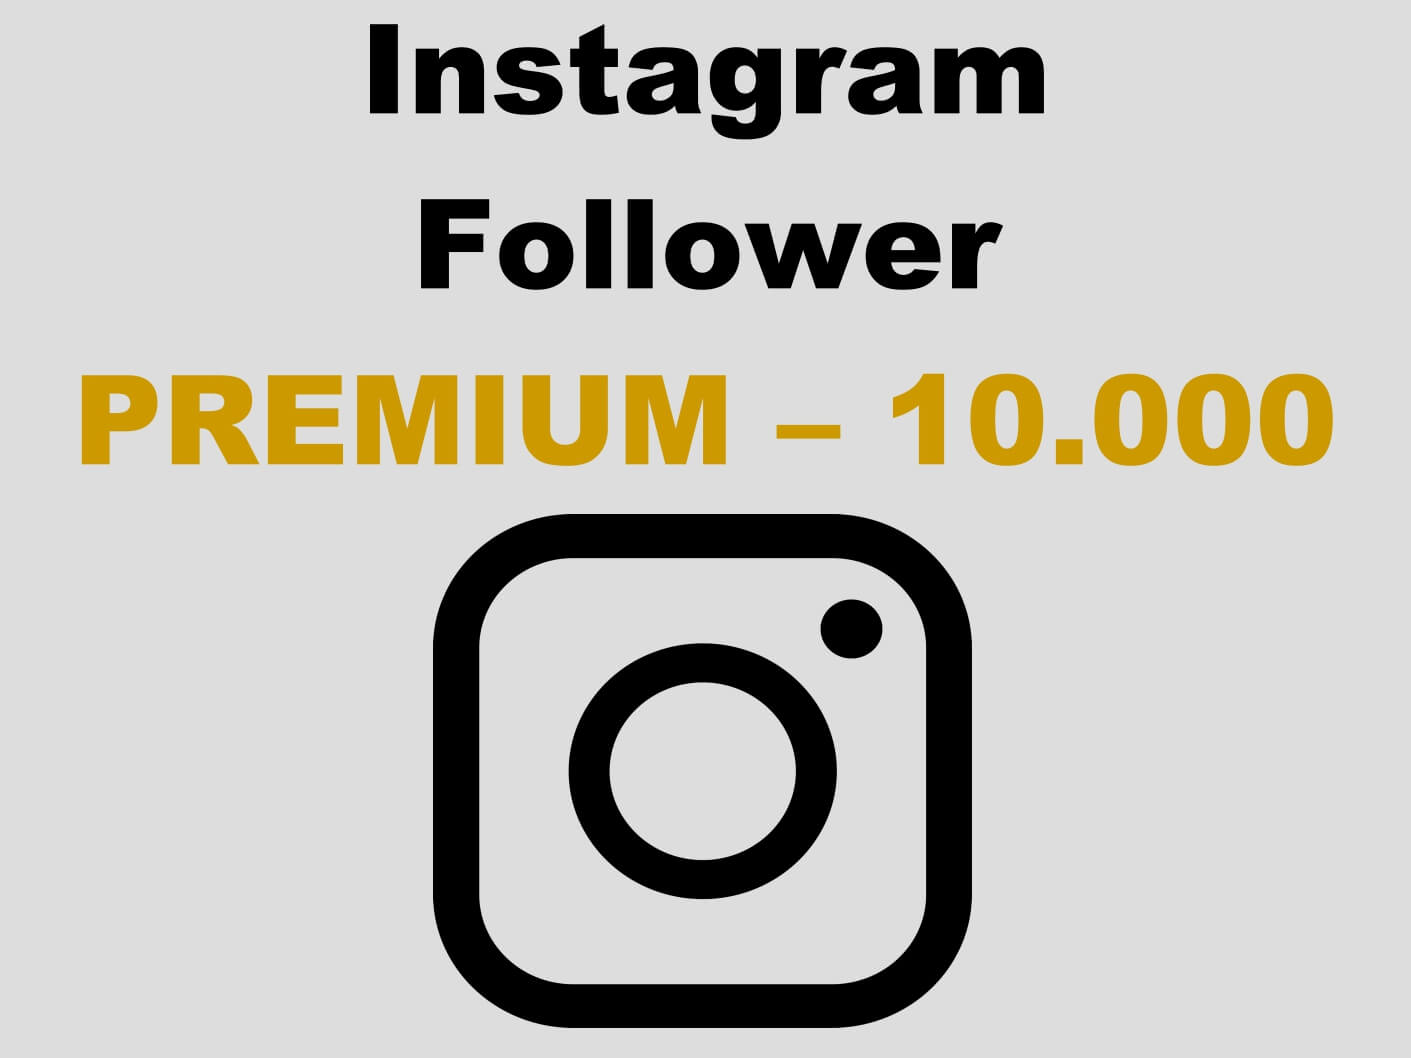 Premium Instagram Follower kaufen 10.000 - Per PayPal und AmEx